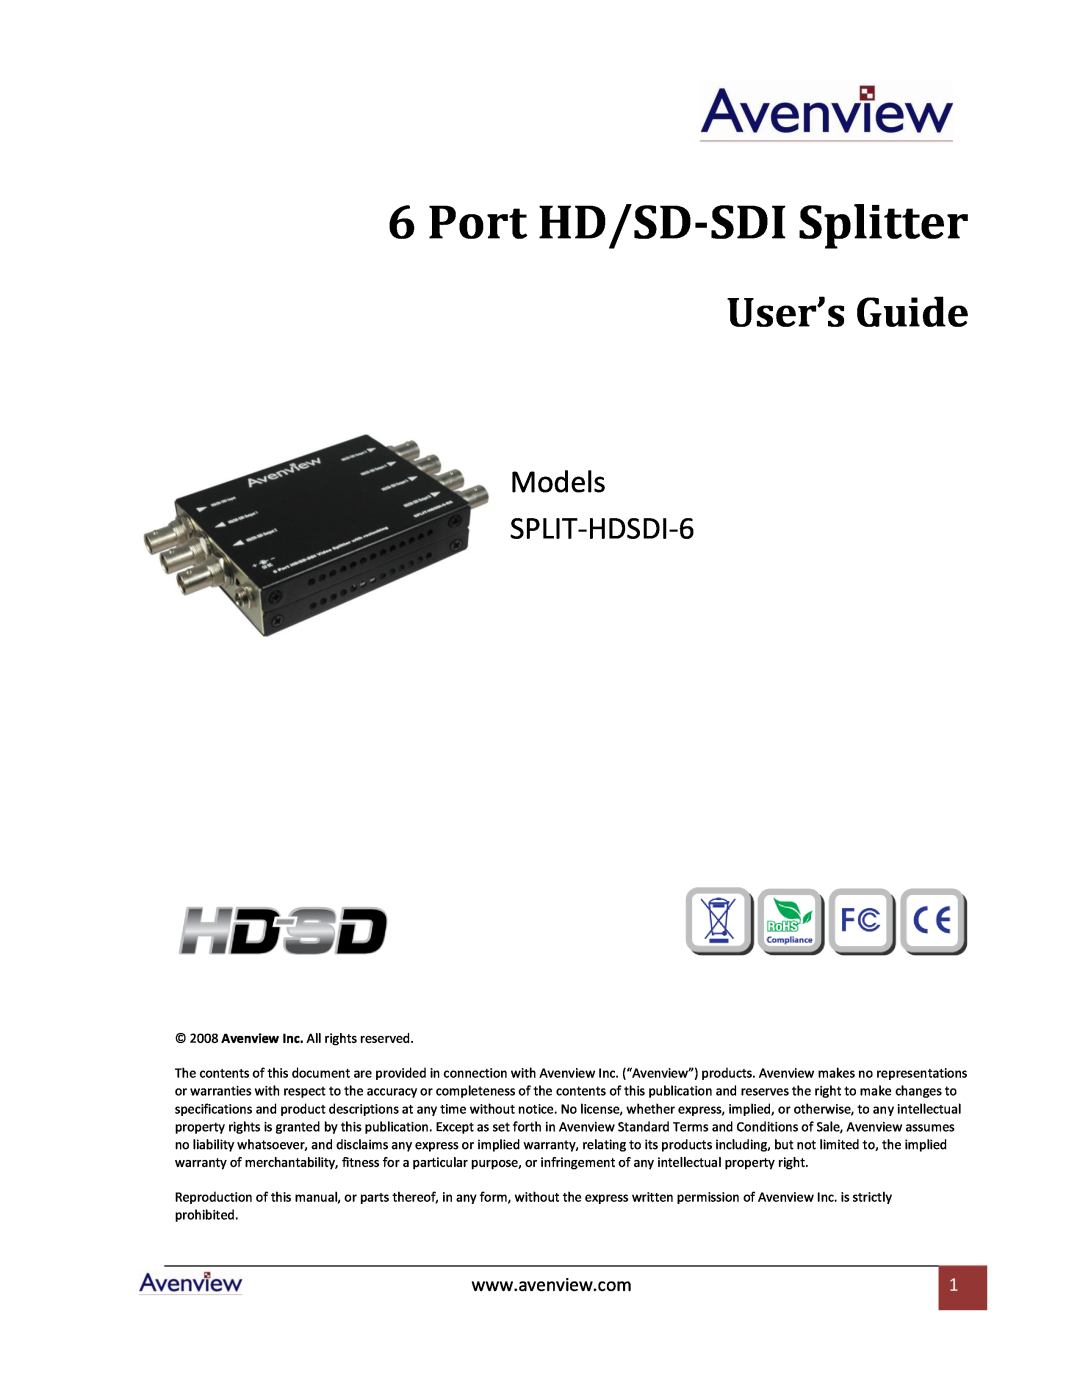 Avenview specifications Port HD/SD-SDI Splitter, User’s Guide, Models SPLIT-HDSDI-6 